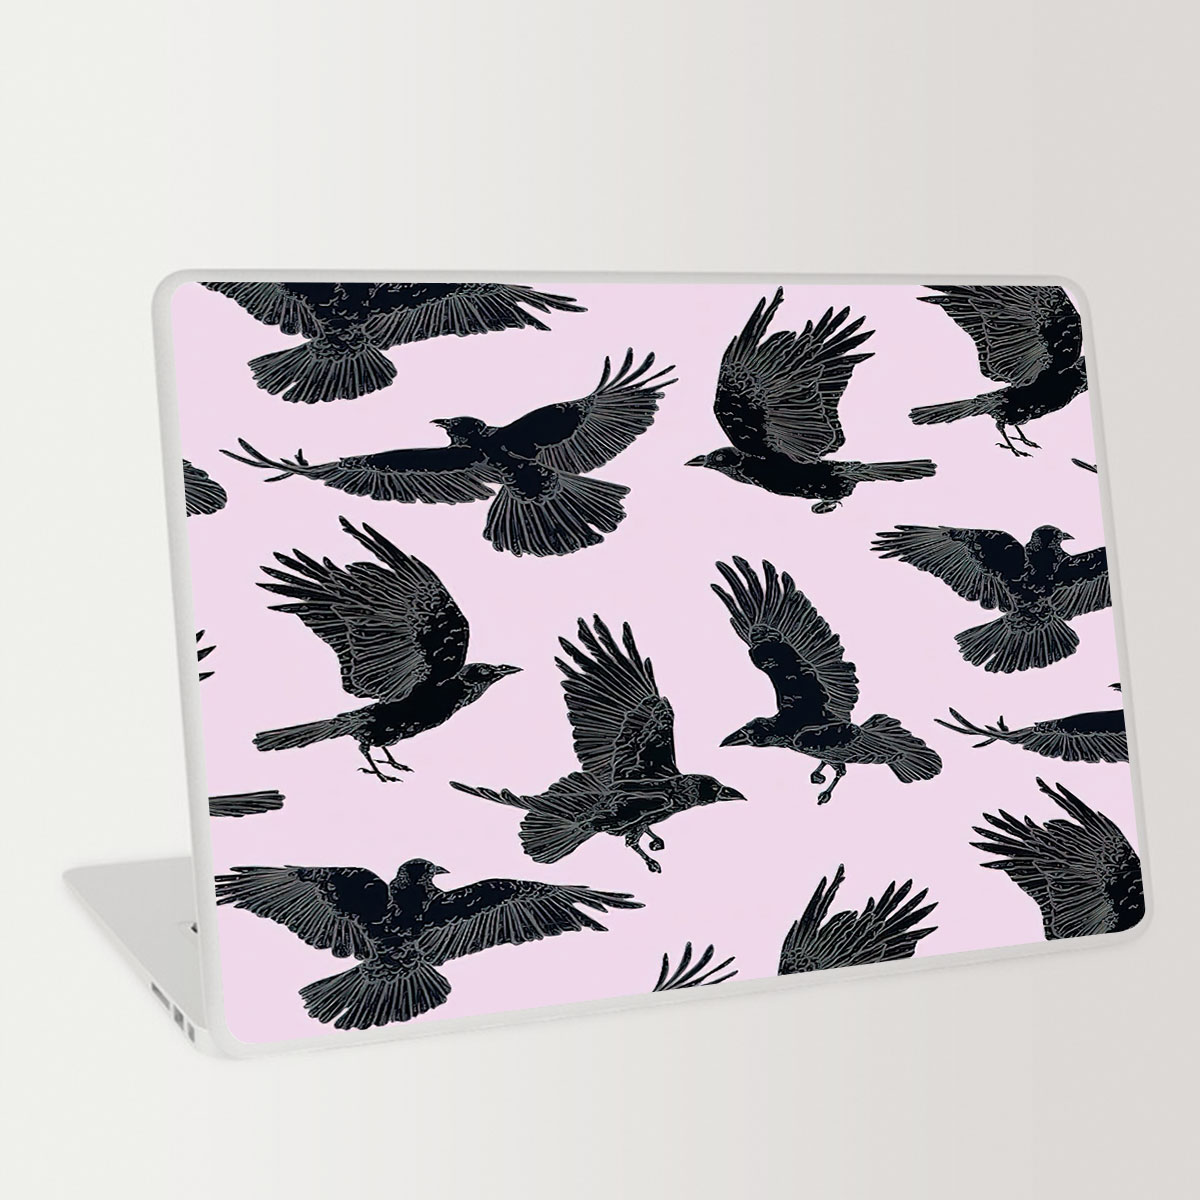 Flying Raven Art Laptop Skin